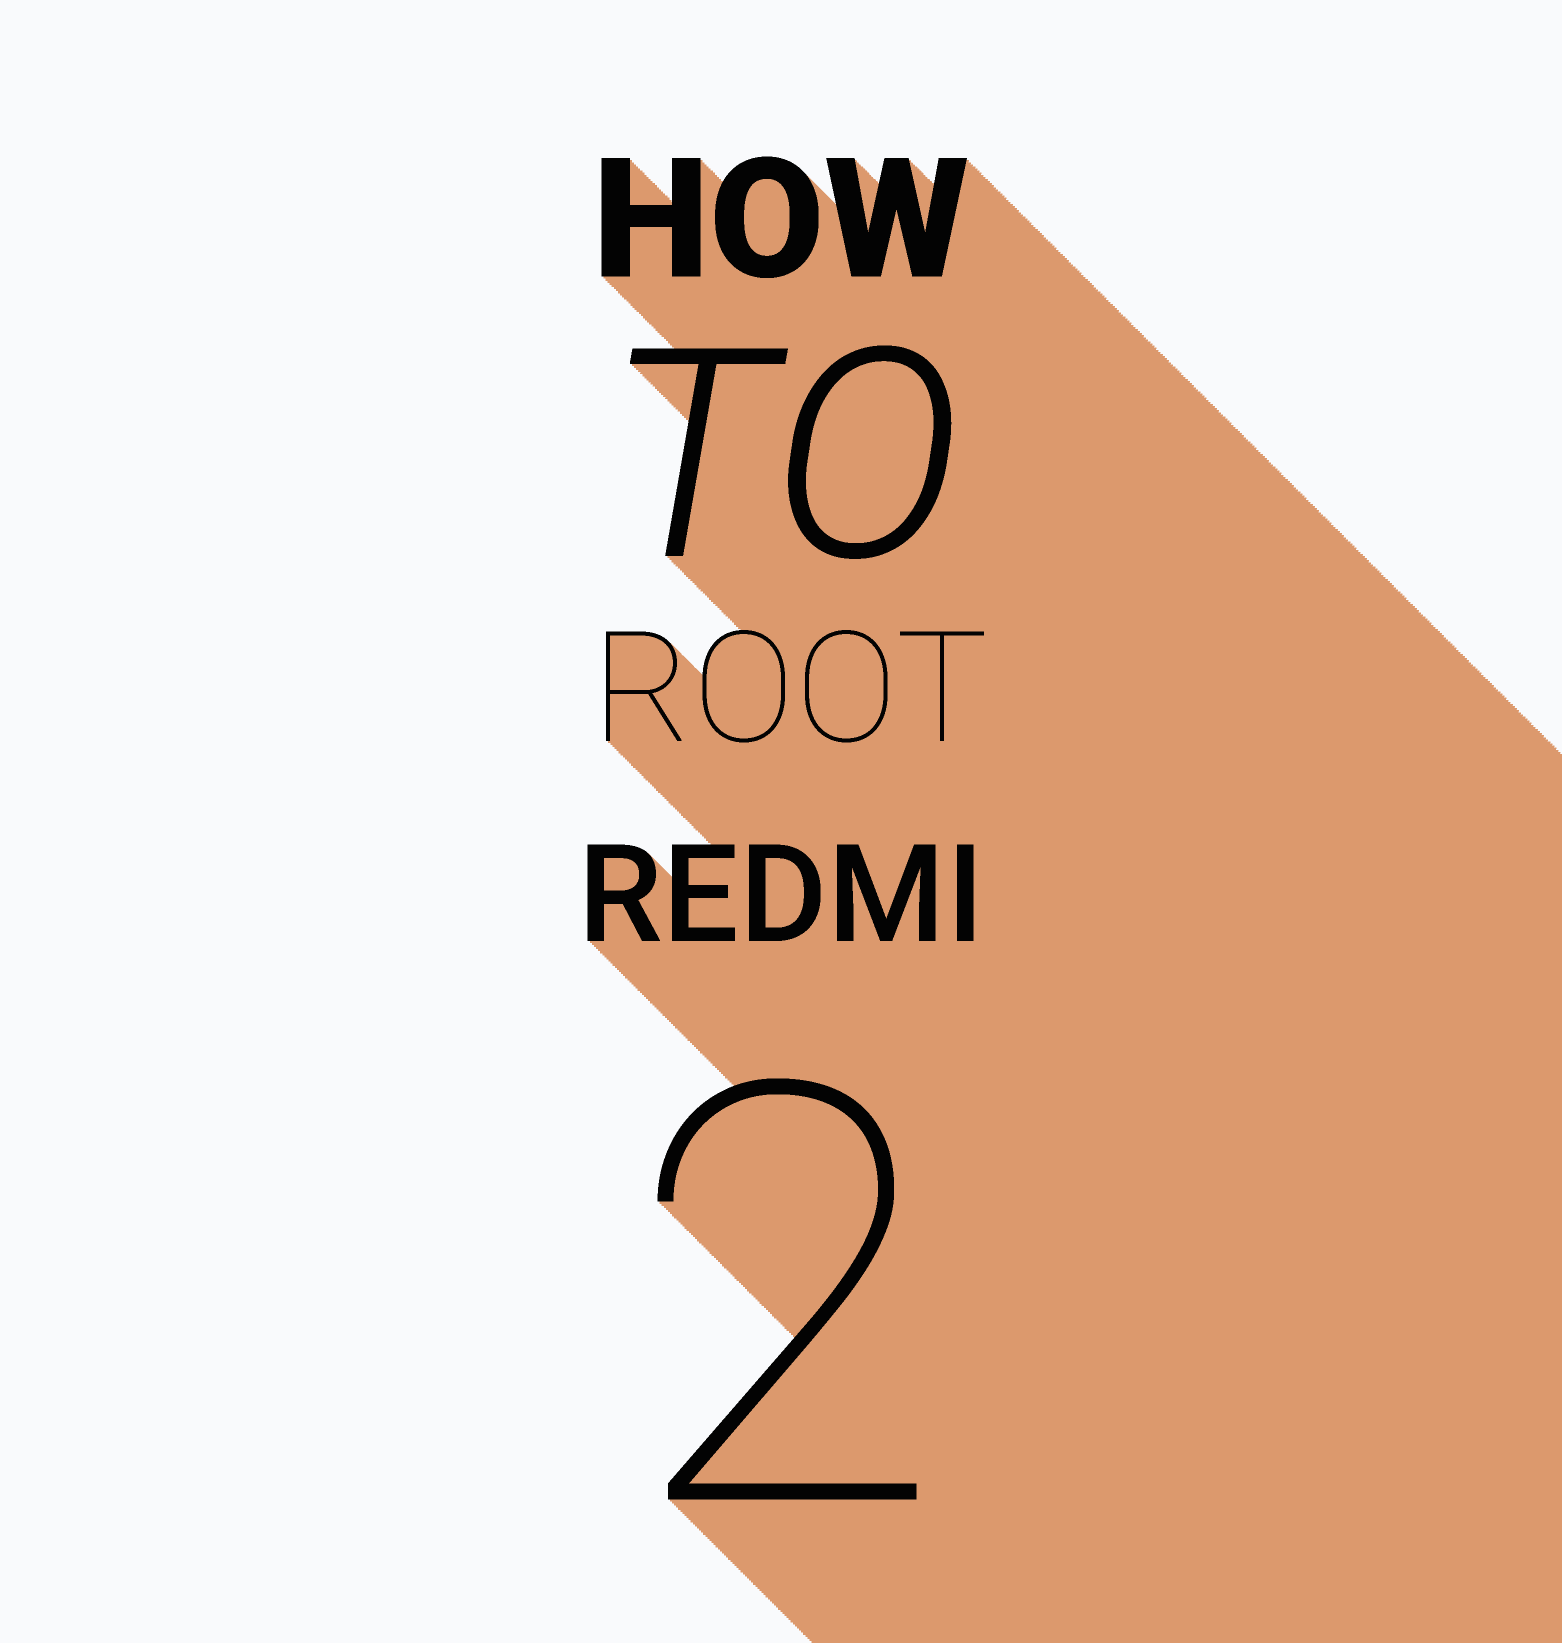 Rooting Xiaomi Smartphones : How To Root Xiaomi Redmi 2